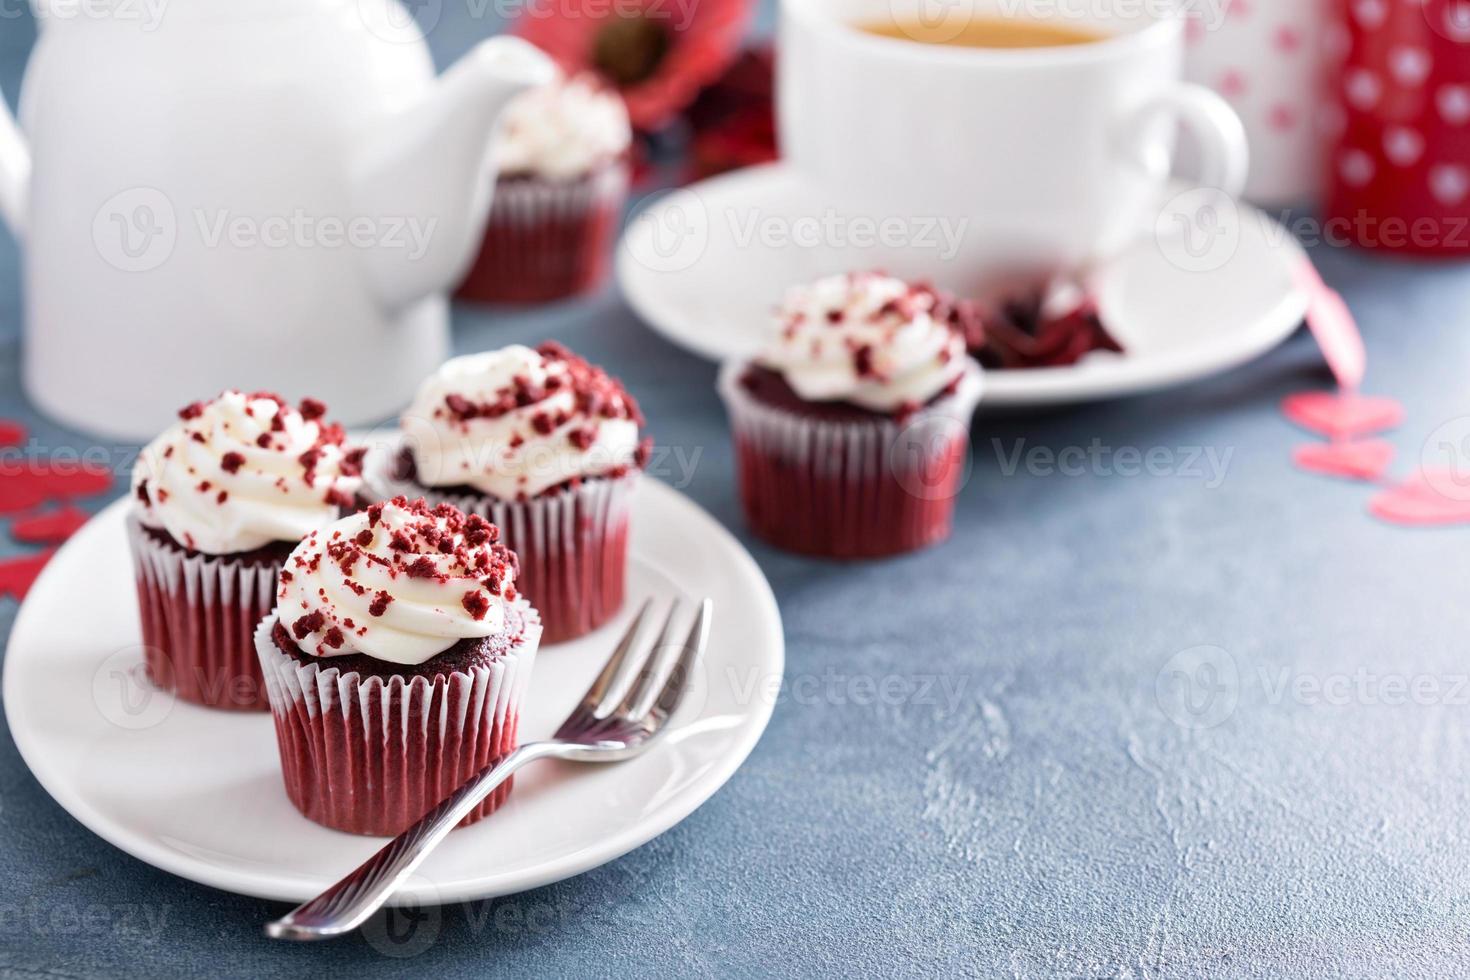 cupcakes en velours rouge pour la saint valentin photo